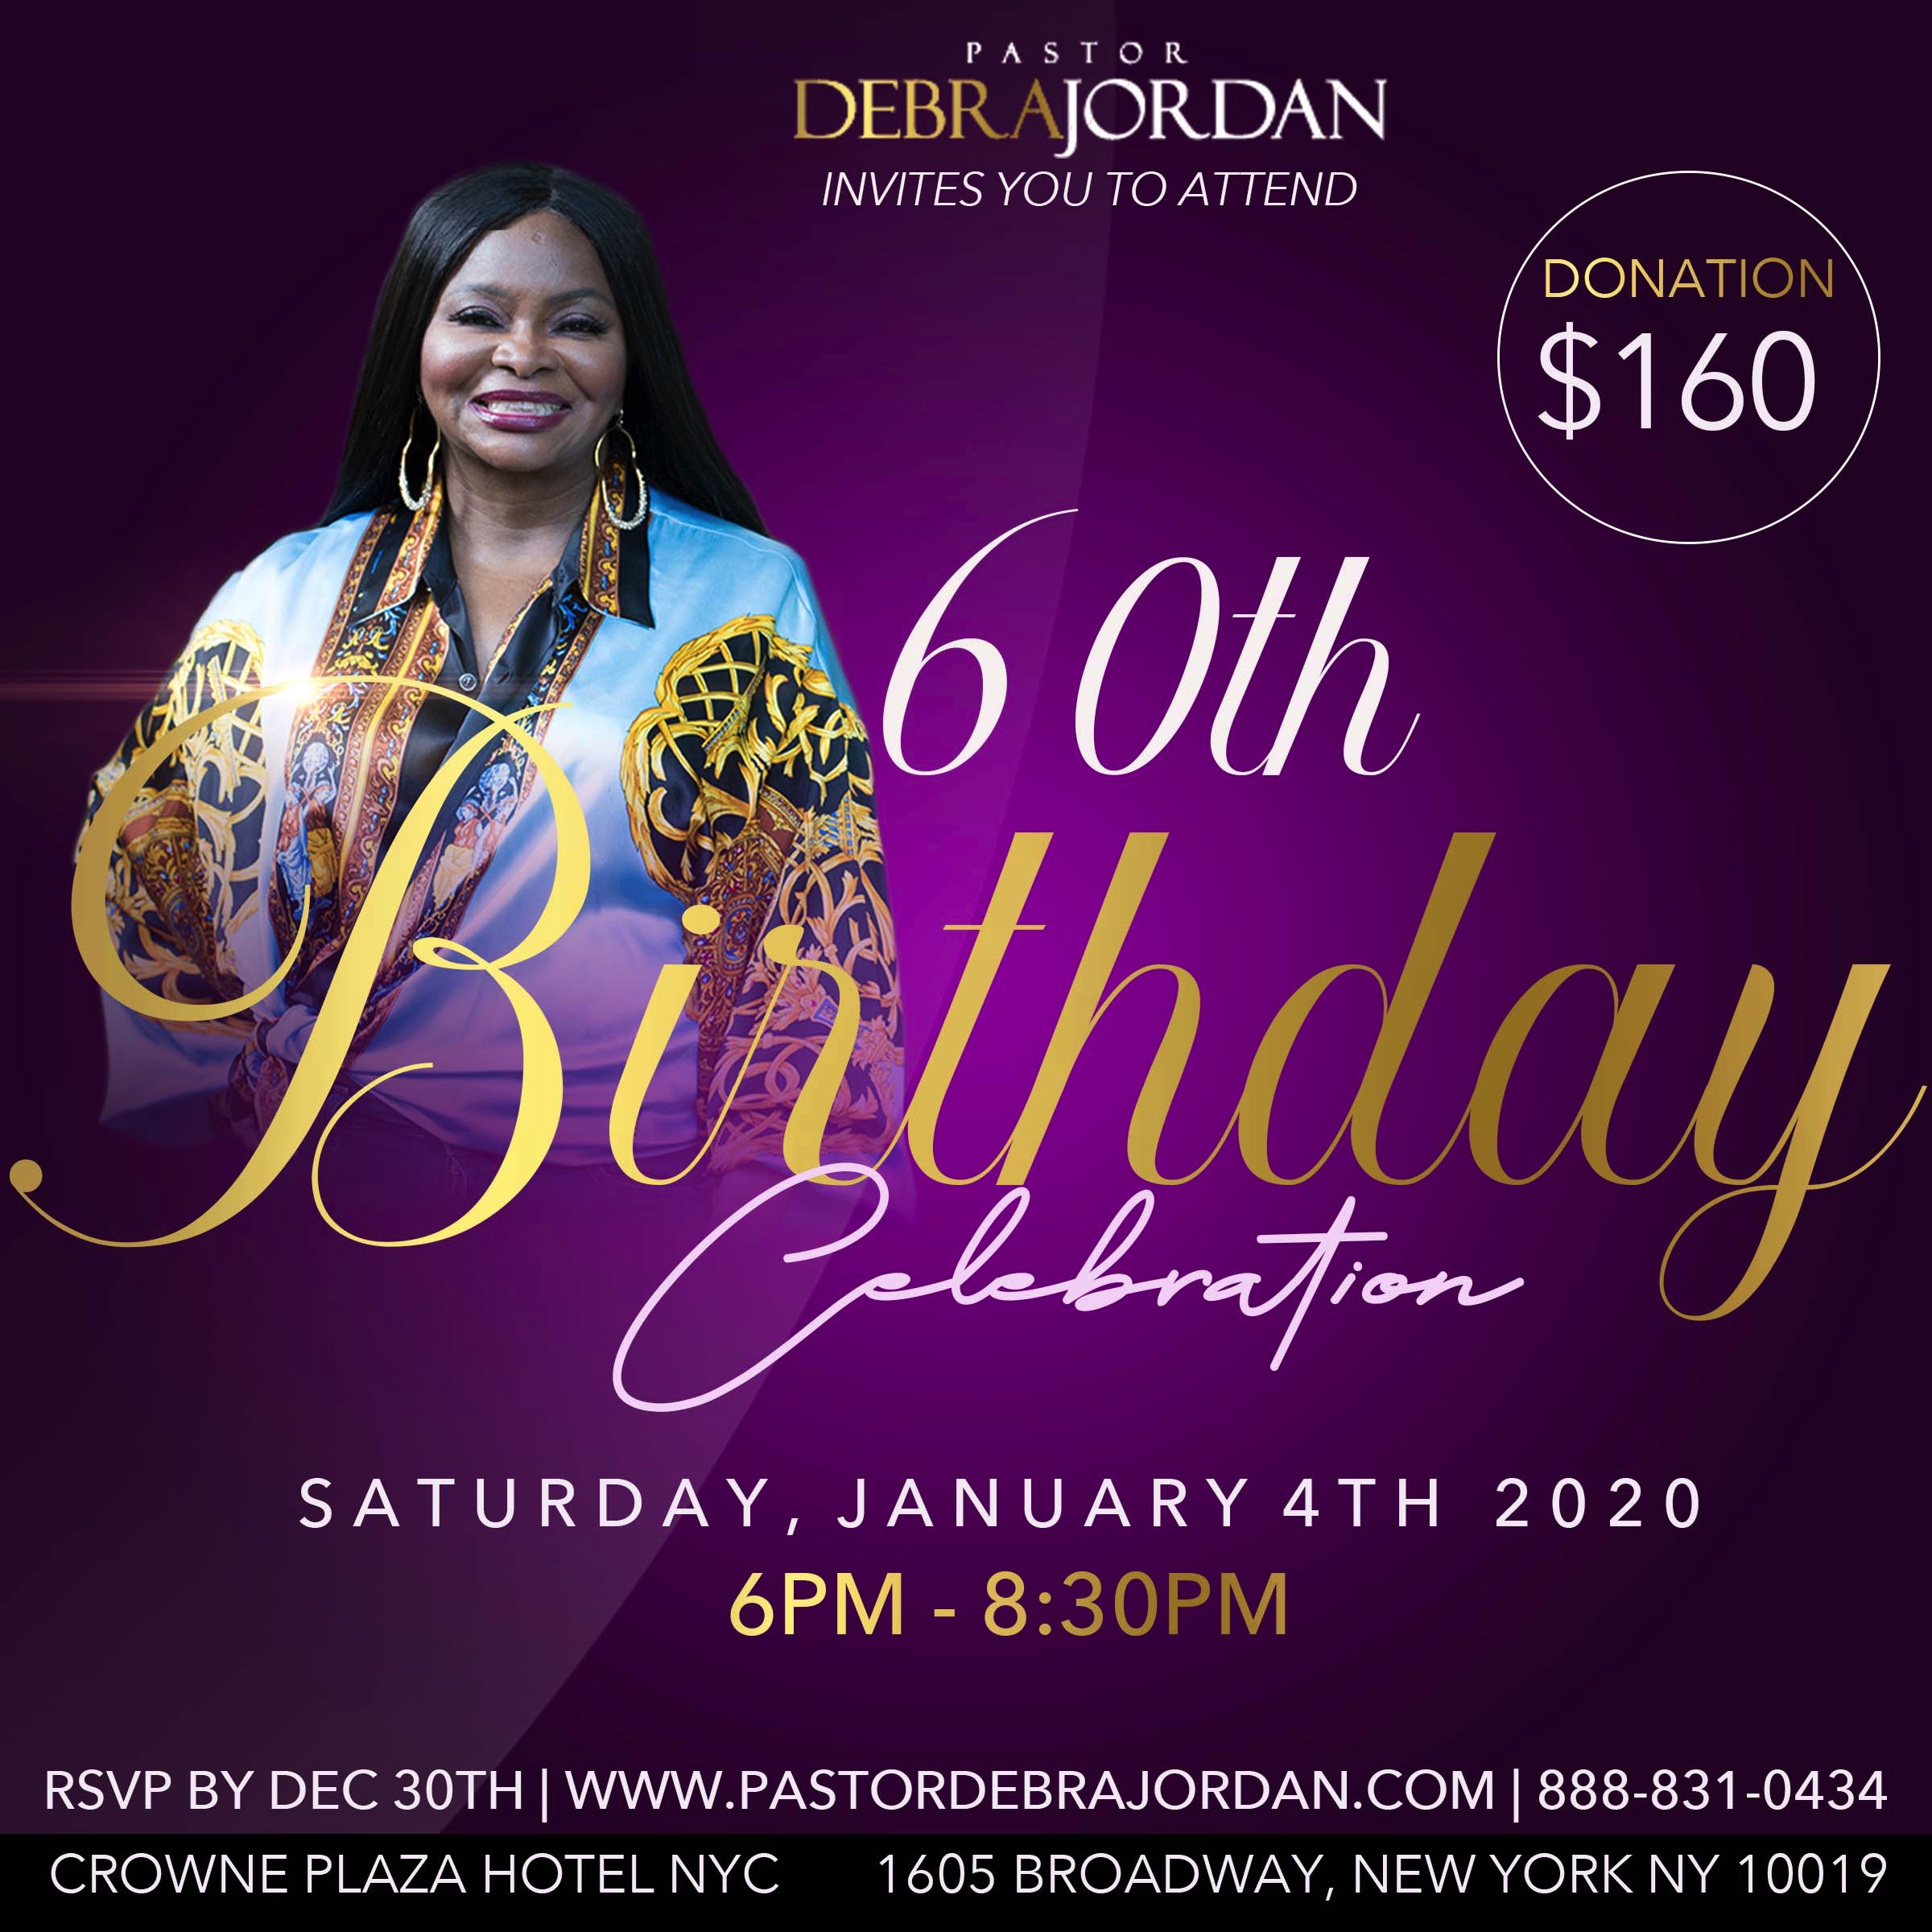 60th Birthday Celebration of Pastor Debra Jordan